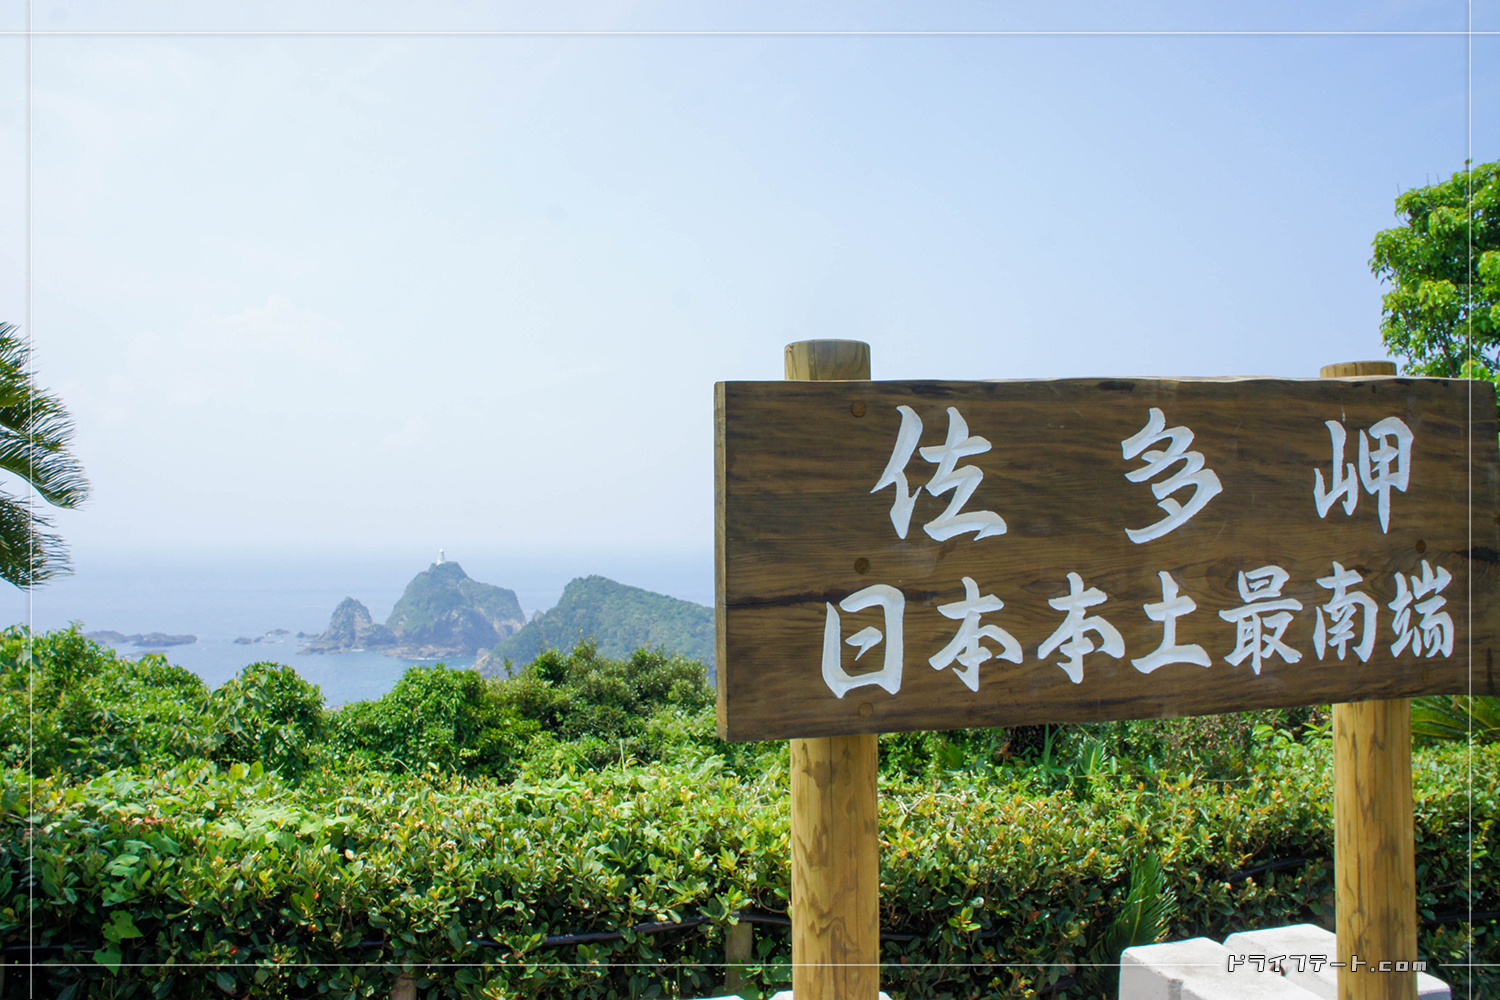 佐多岬 日本本土最南端と記された標識